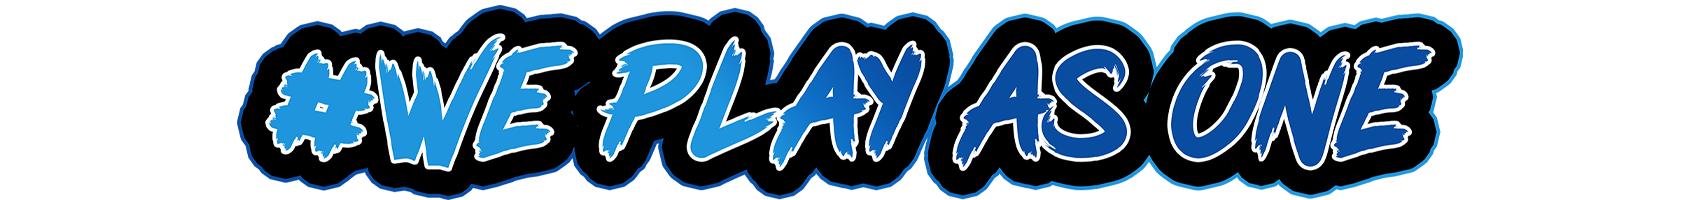 Logo #WePlayAsOne